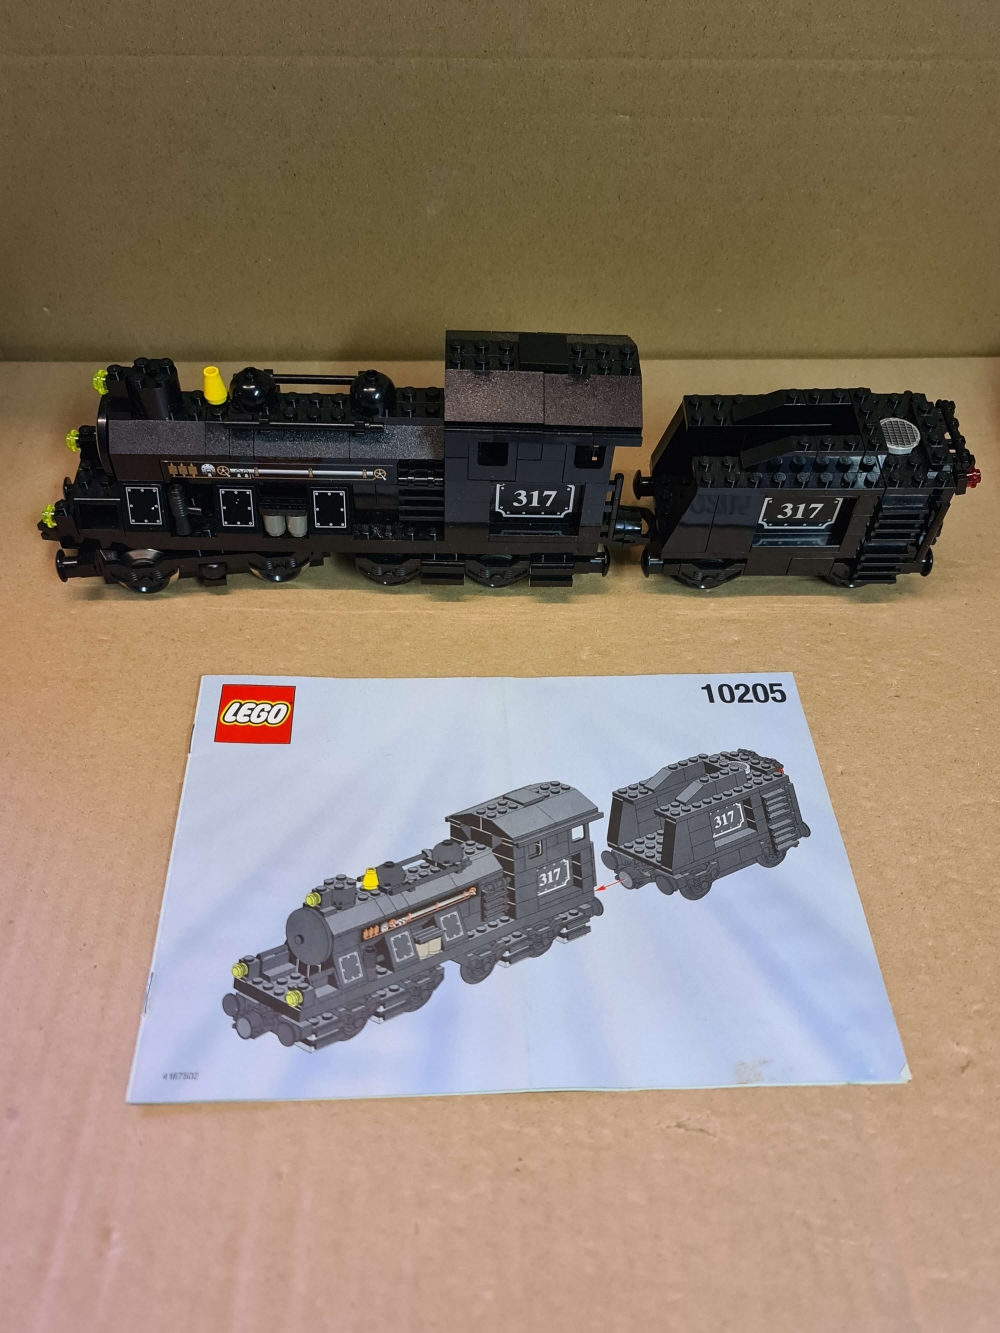 Sett 10205 fra Lego Train : 9V : My Own Train serien.
Nydelig sett. Gjort om til motorisert med motorsett 10153.
Med manual.